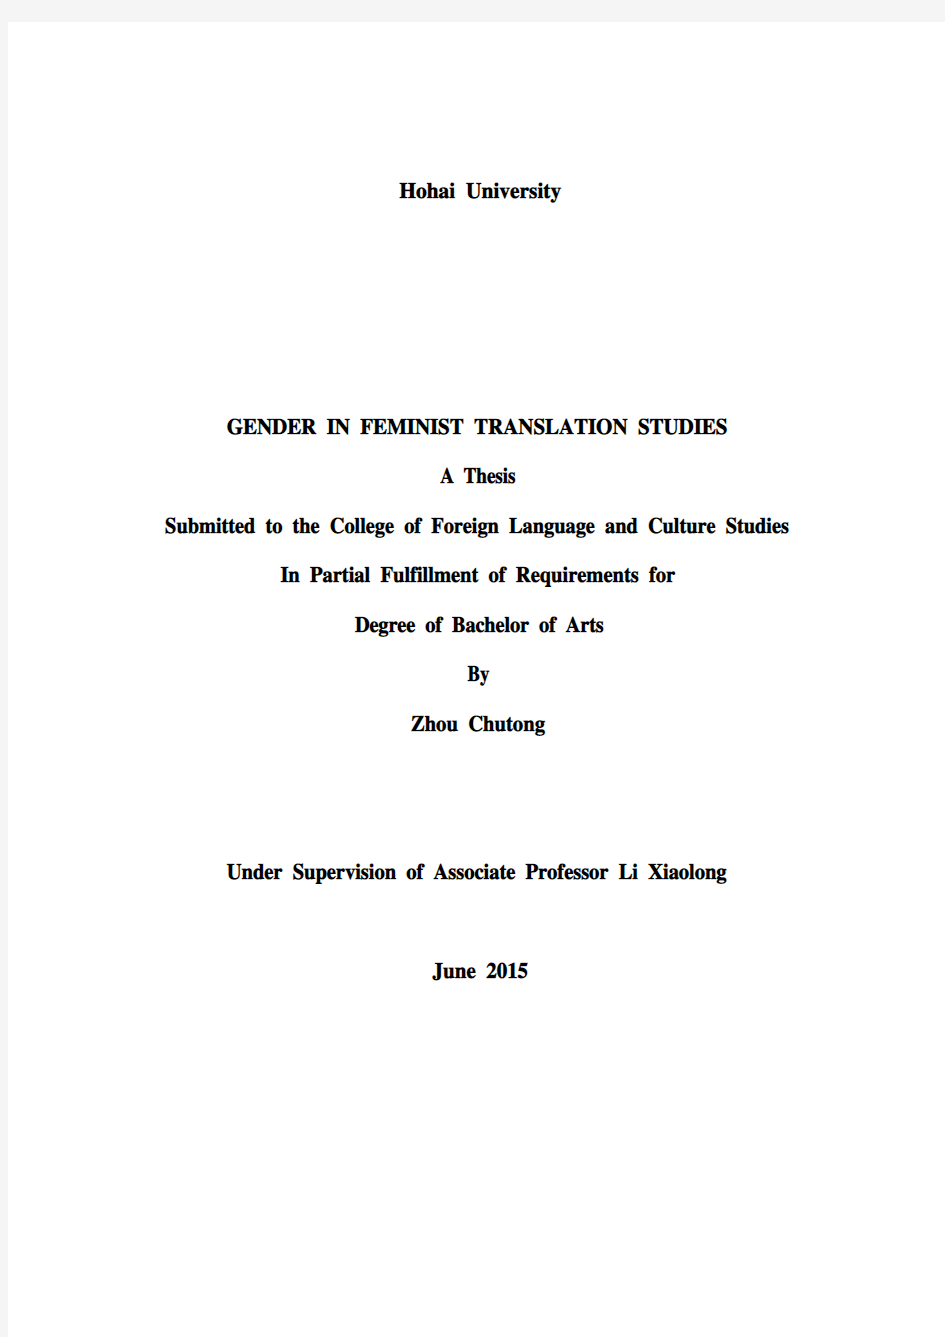 (2015)河海大学外国语学院学士学位论文格式规范指导